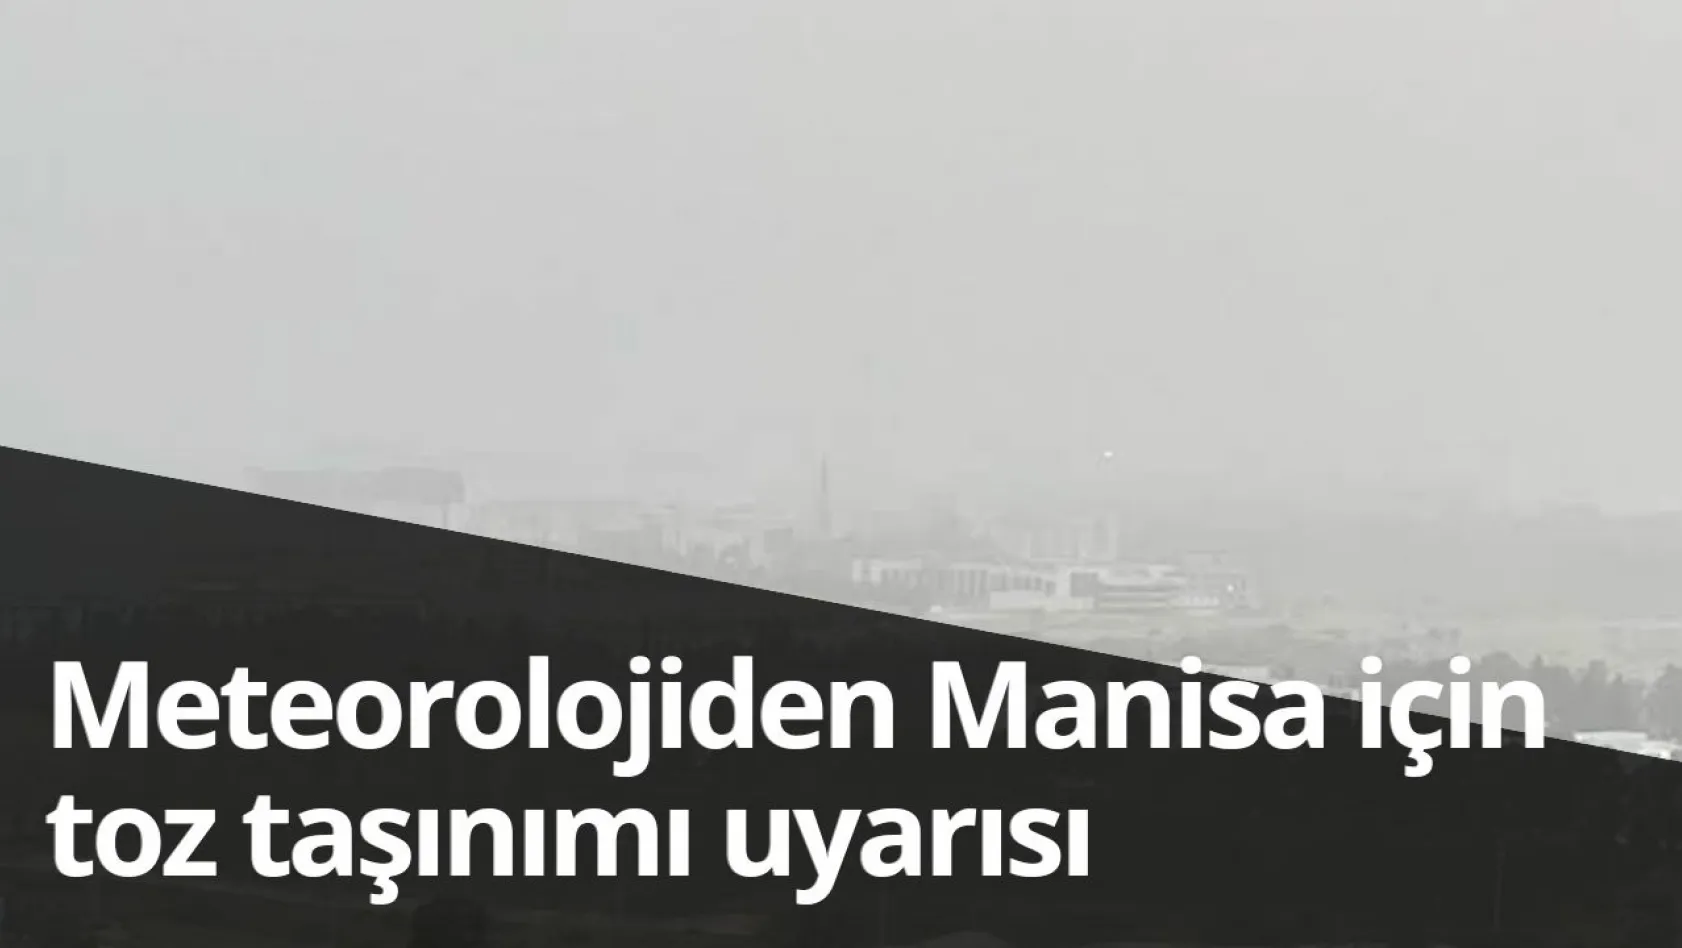 Meteorolojiden Manisa için toz taşınımı uyarısı